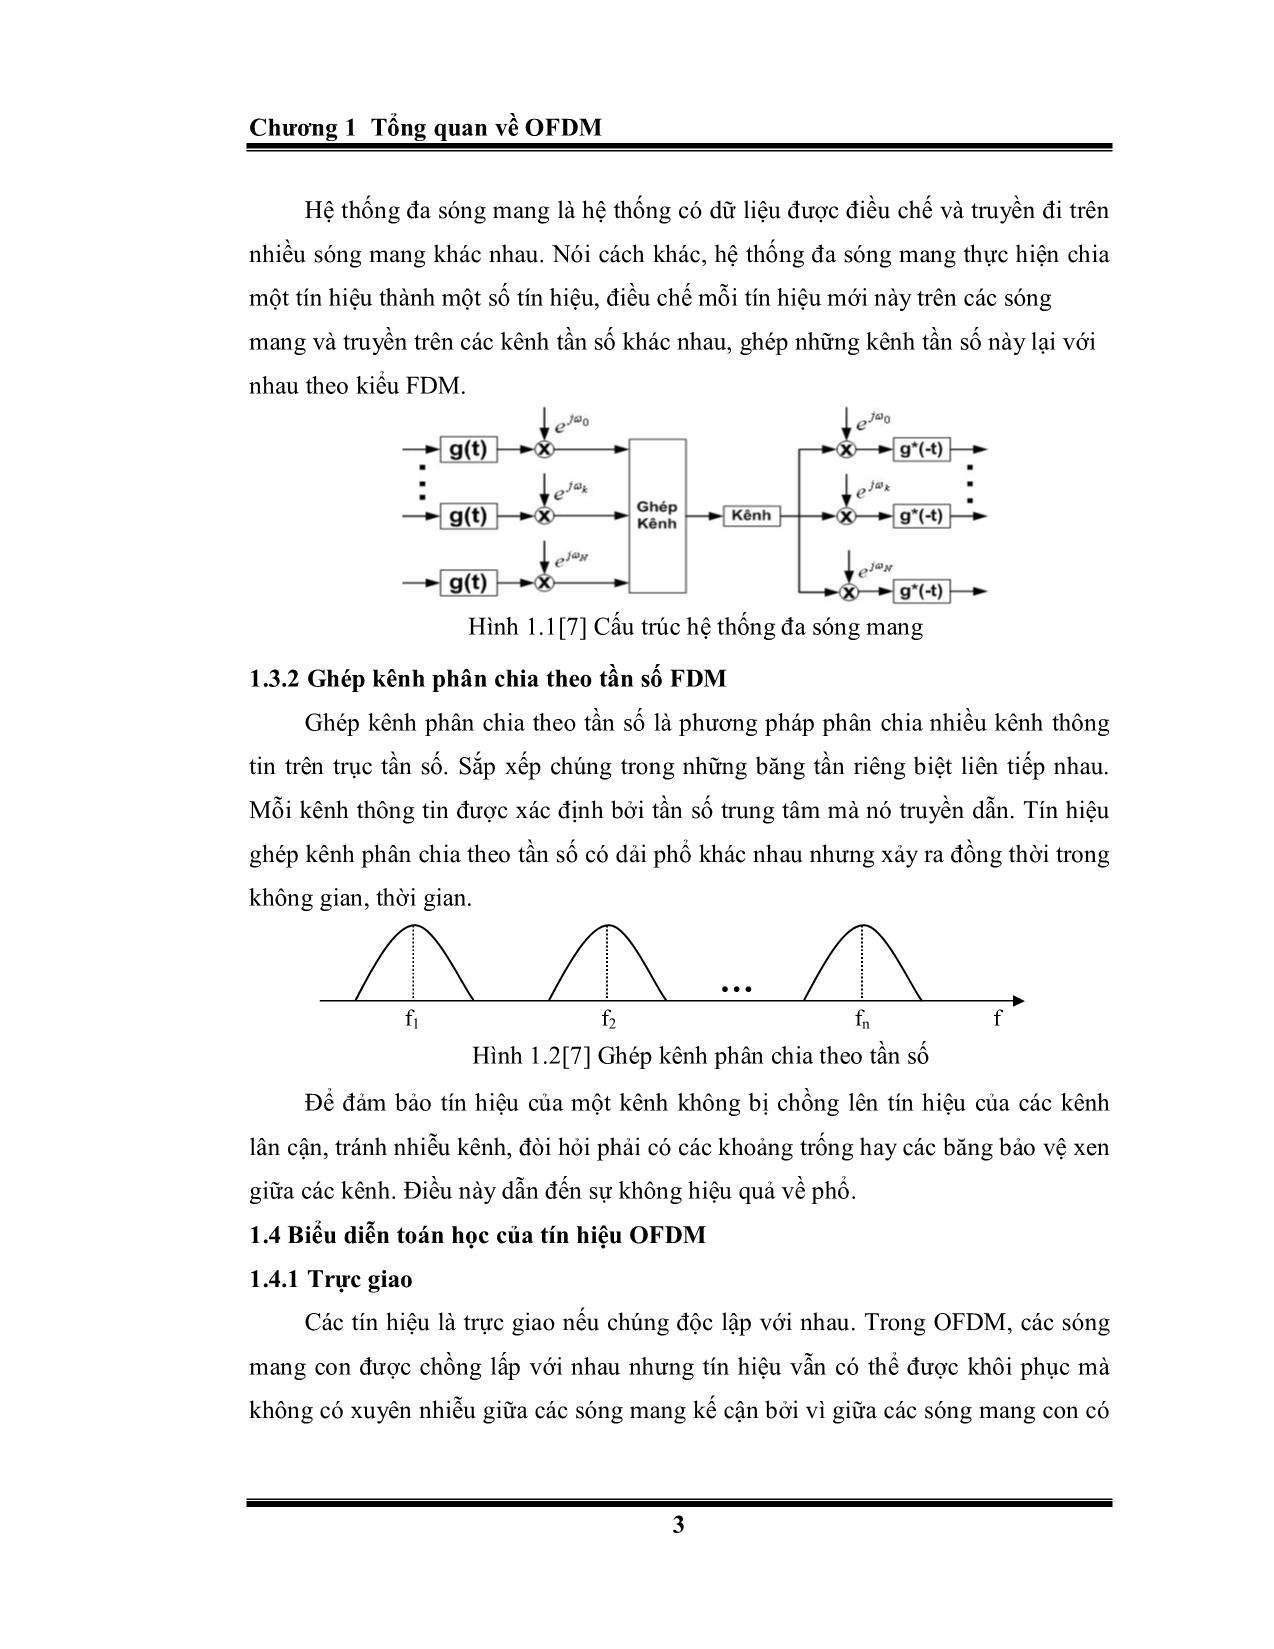 Luận văn Kỹ thuật ghép kênh phân chia theo tần số trực giao – OFDM trang 3